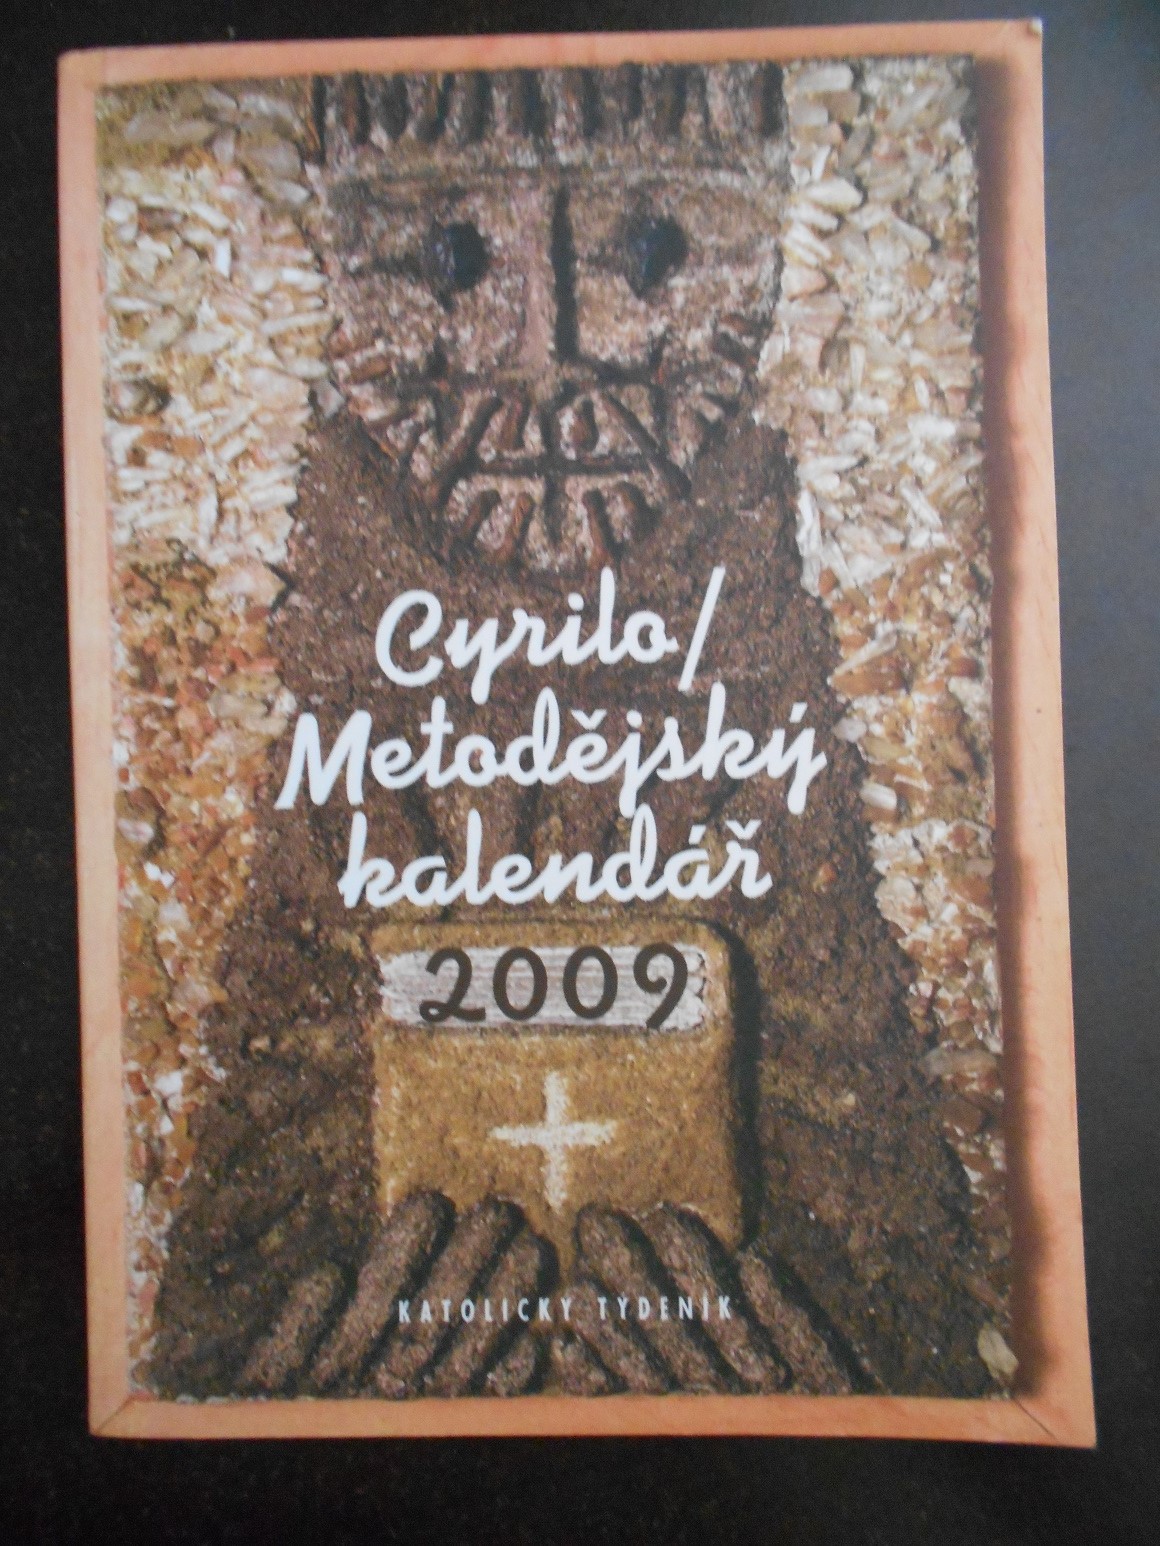 Cyrilo/Metodějský kalendář 2009